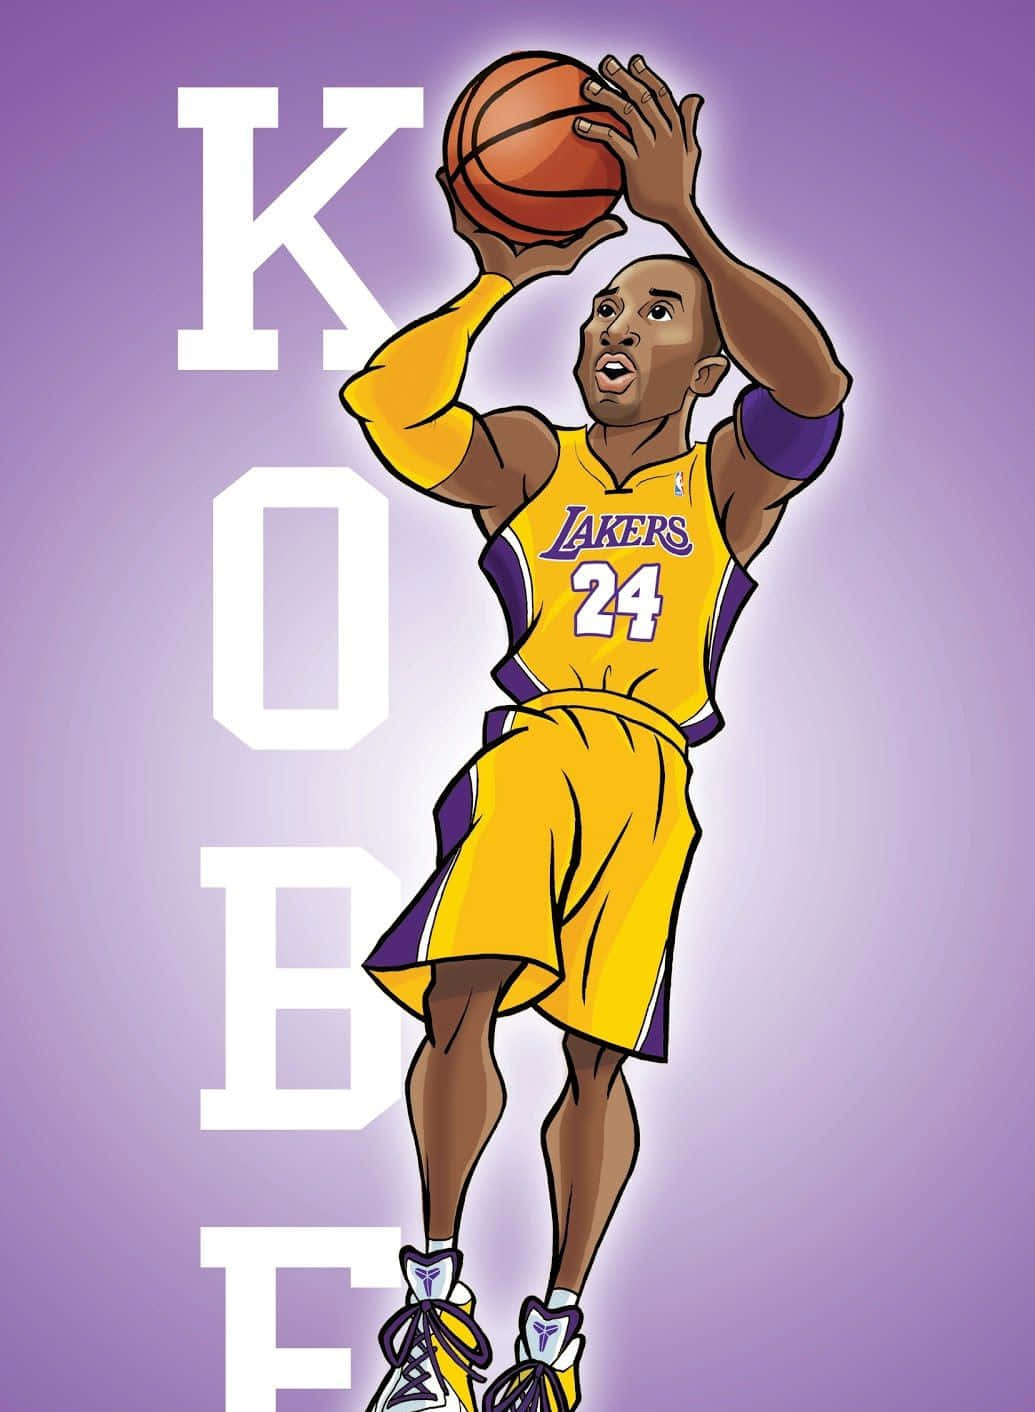 Lendáriojogador Dos Los Angeles Lakers, Kobe Bryant.